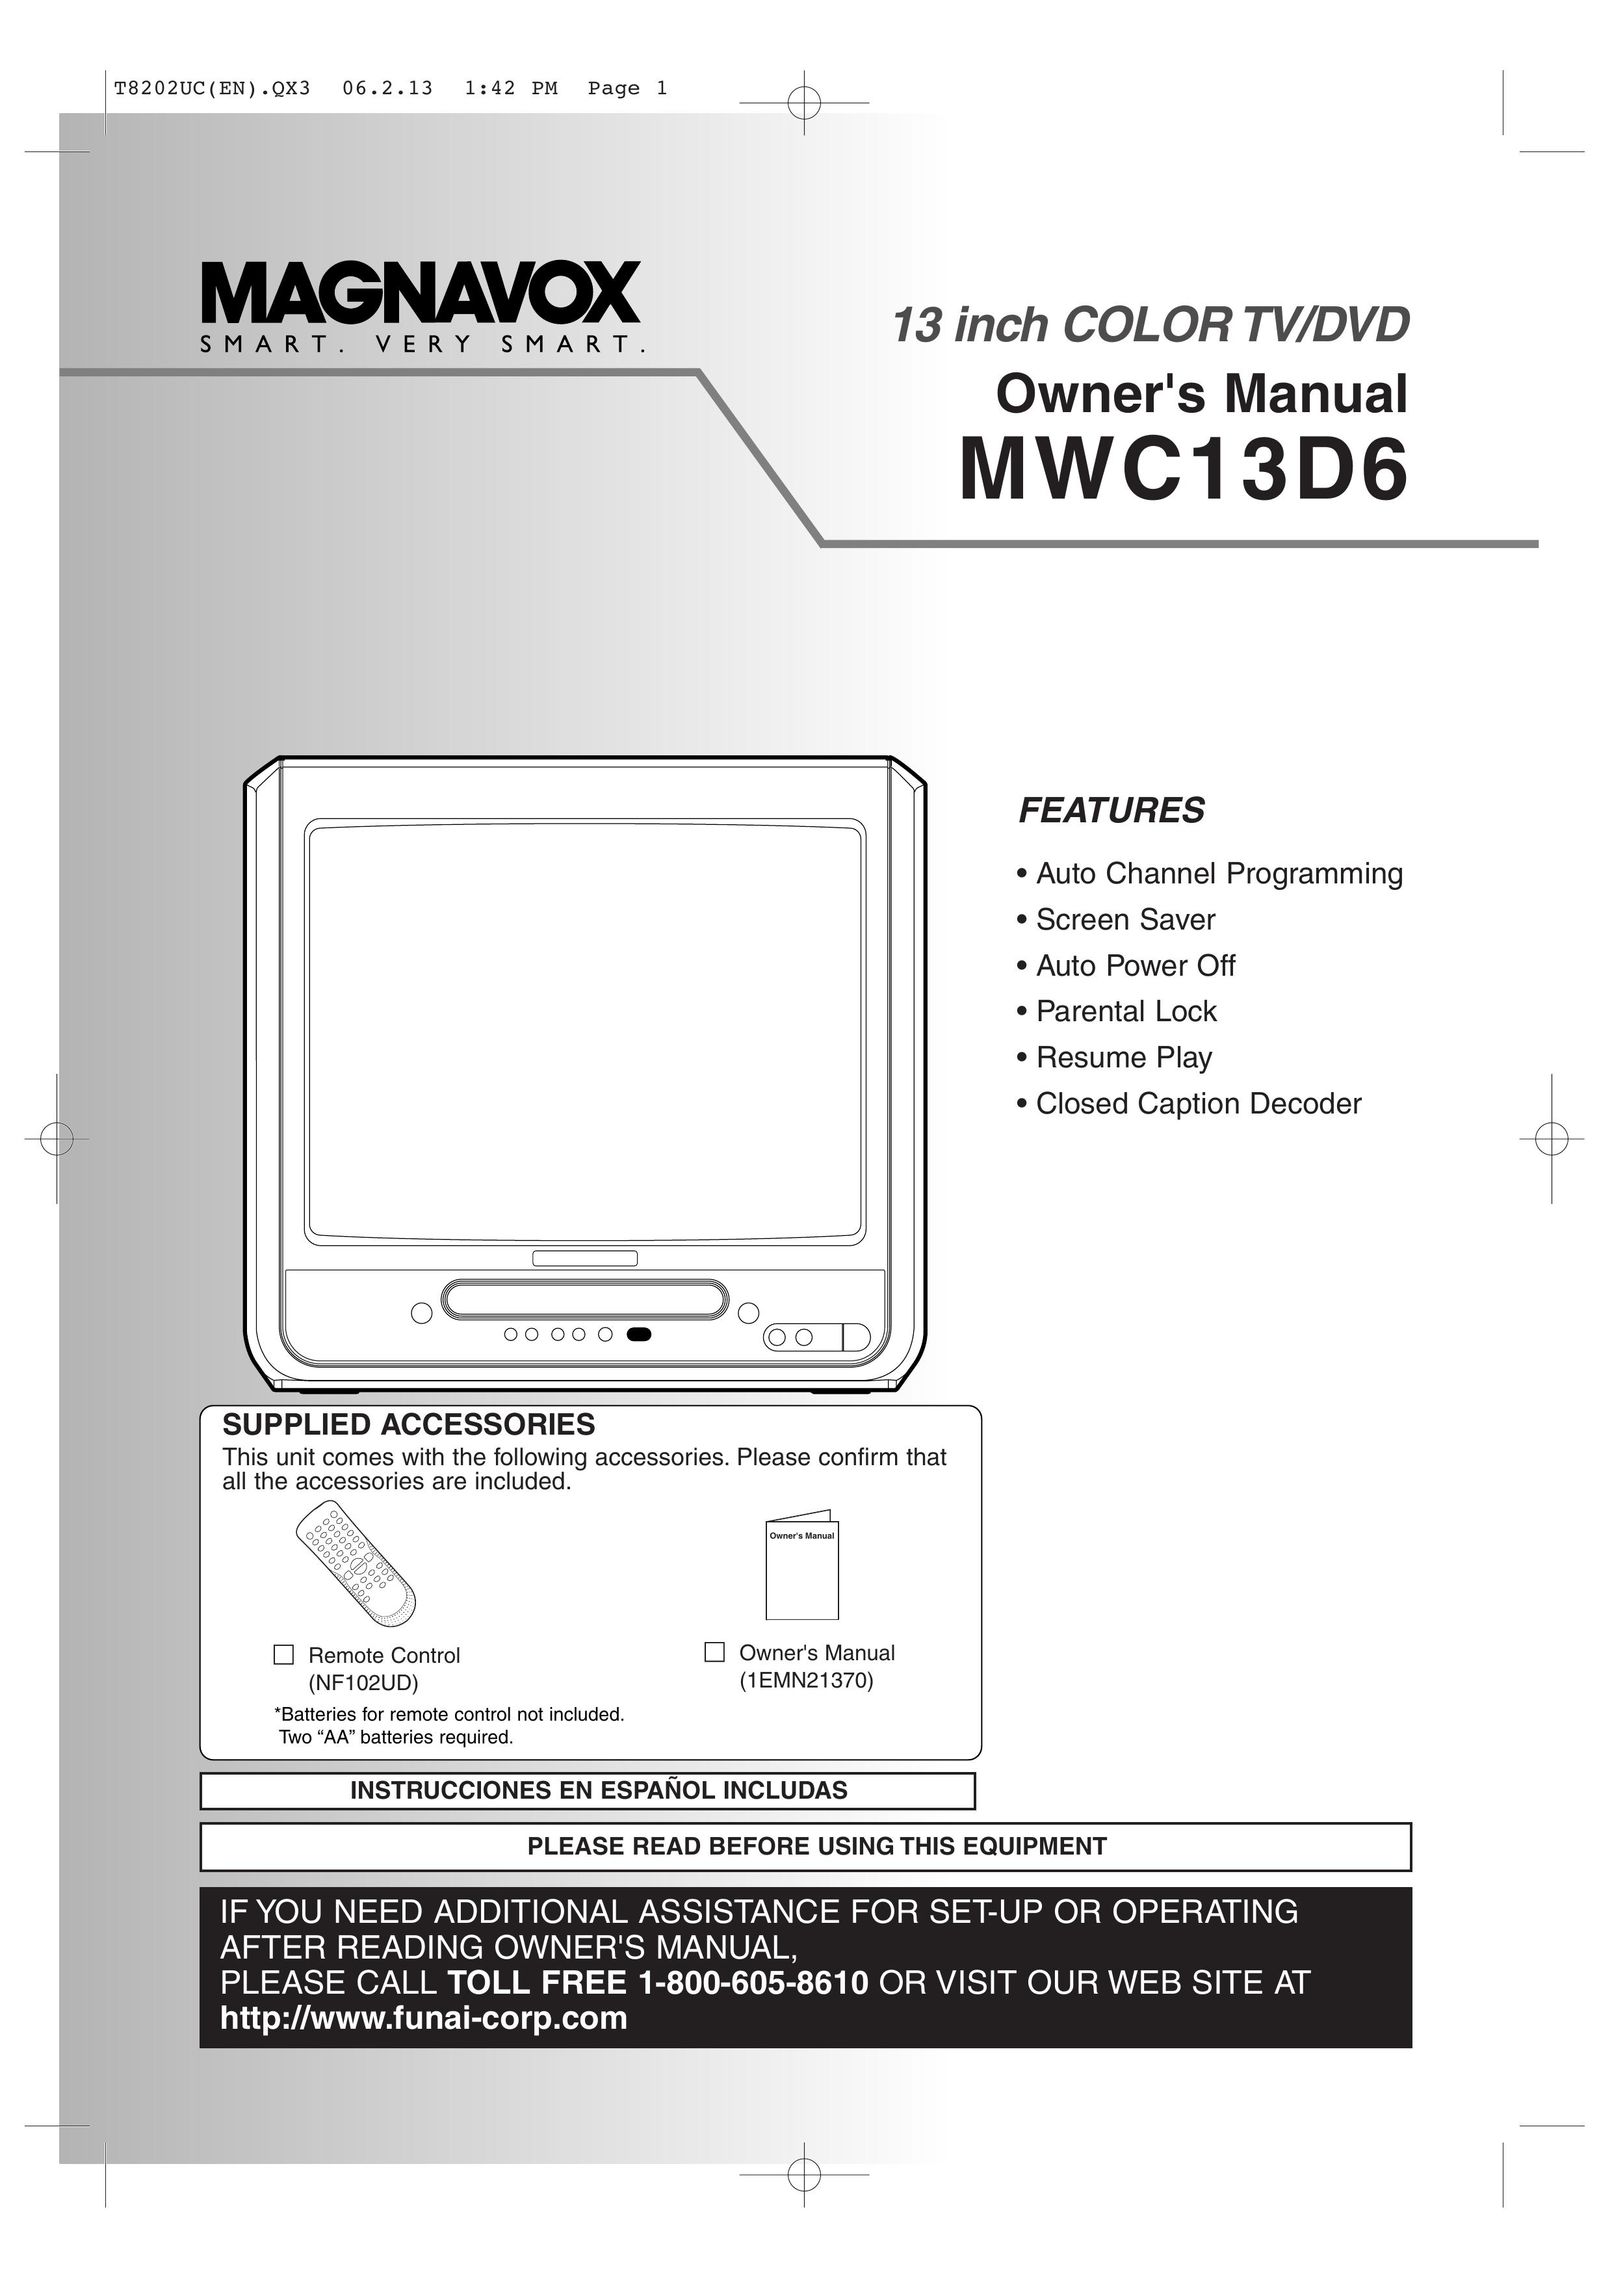 FUNAI MWC13D6 TV DVD Combo User Manual